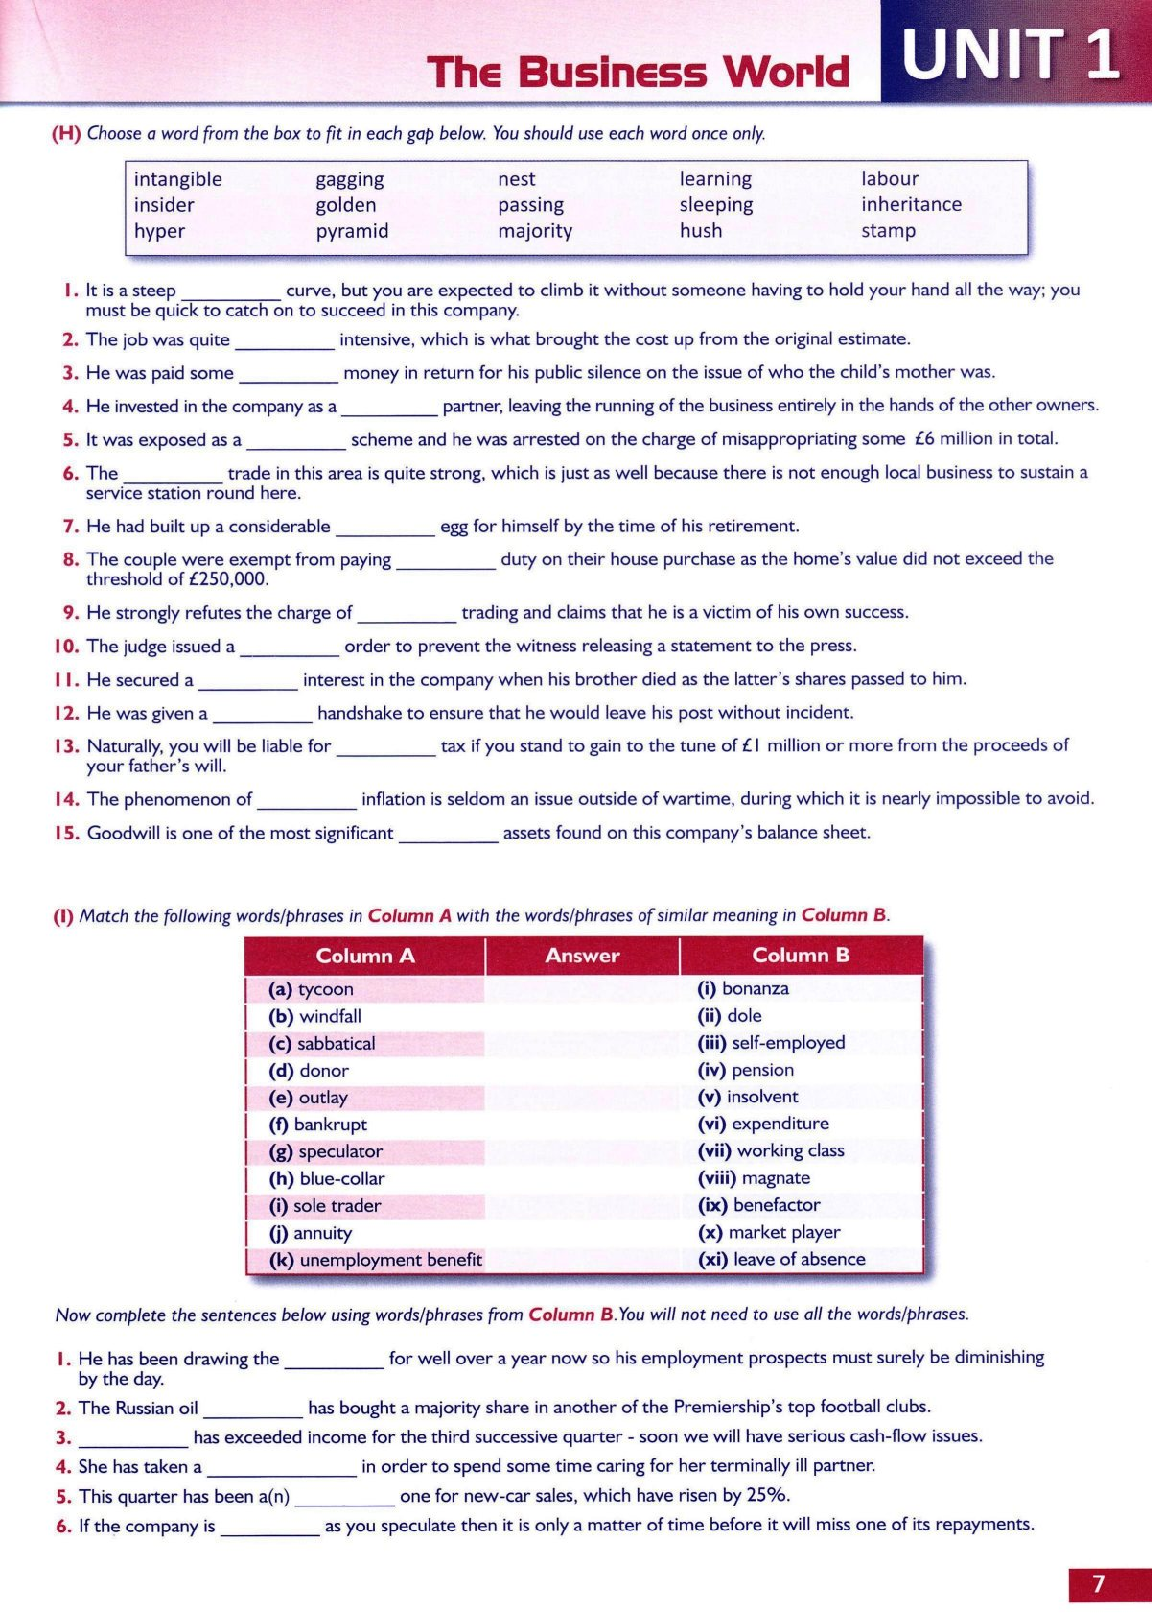 Sách The Vocabulary files C2 PDF | Xem online, tải PDF miễn phí (trang 6)